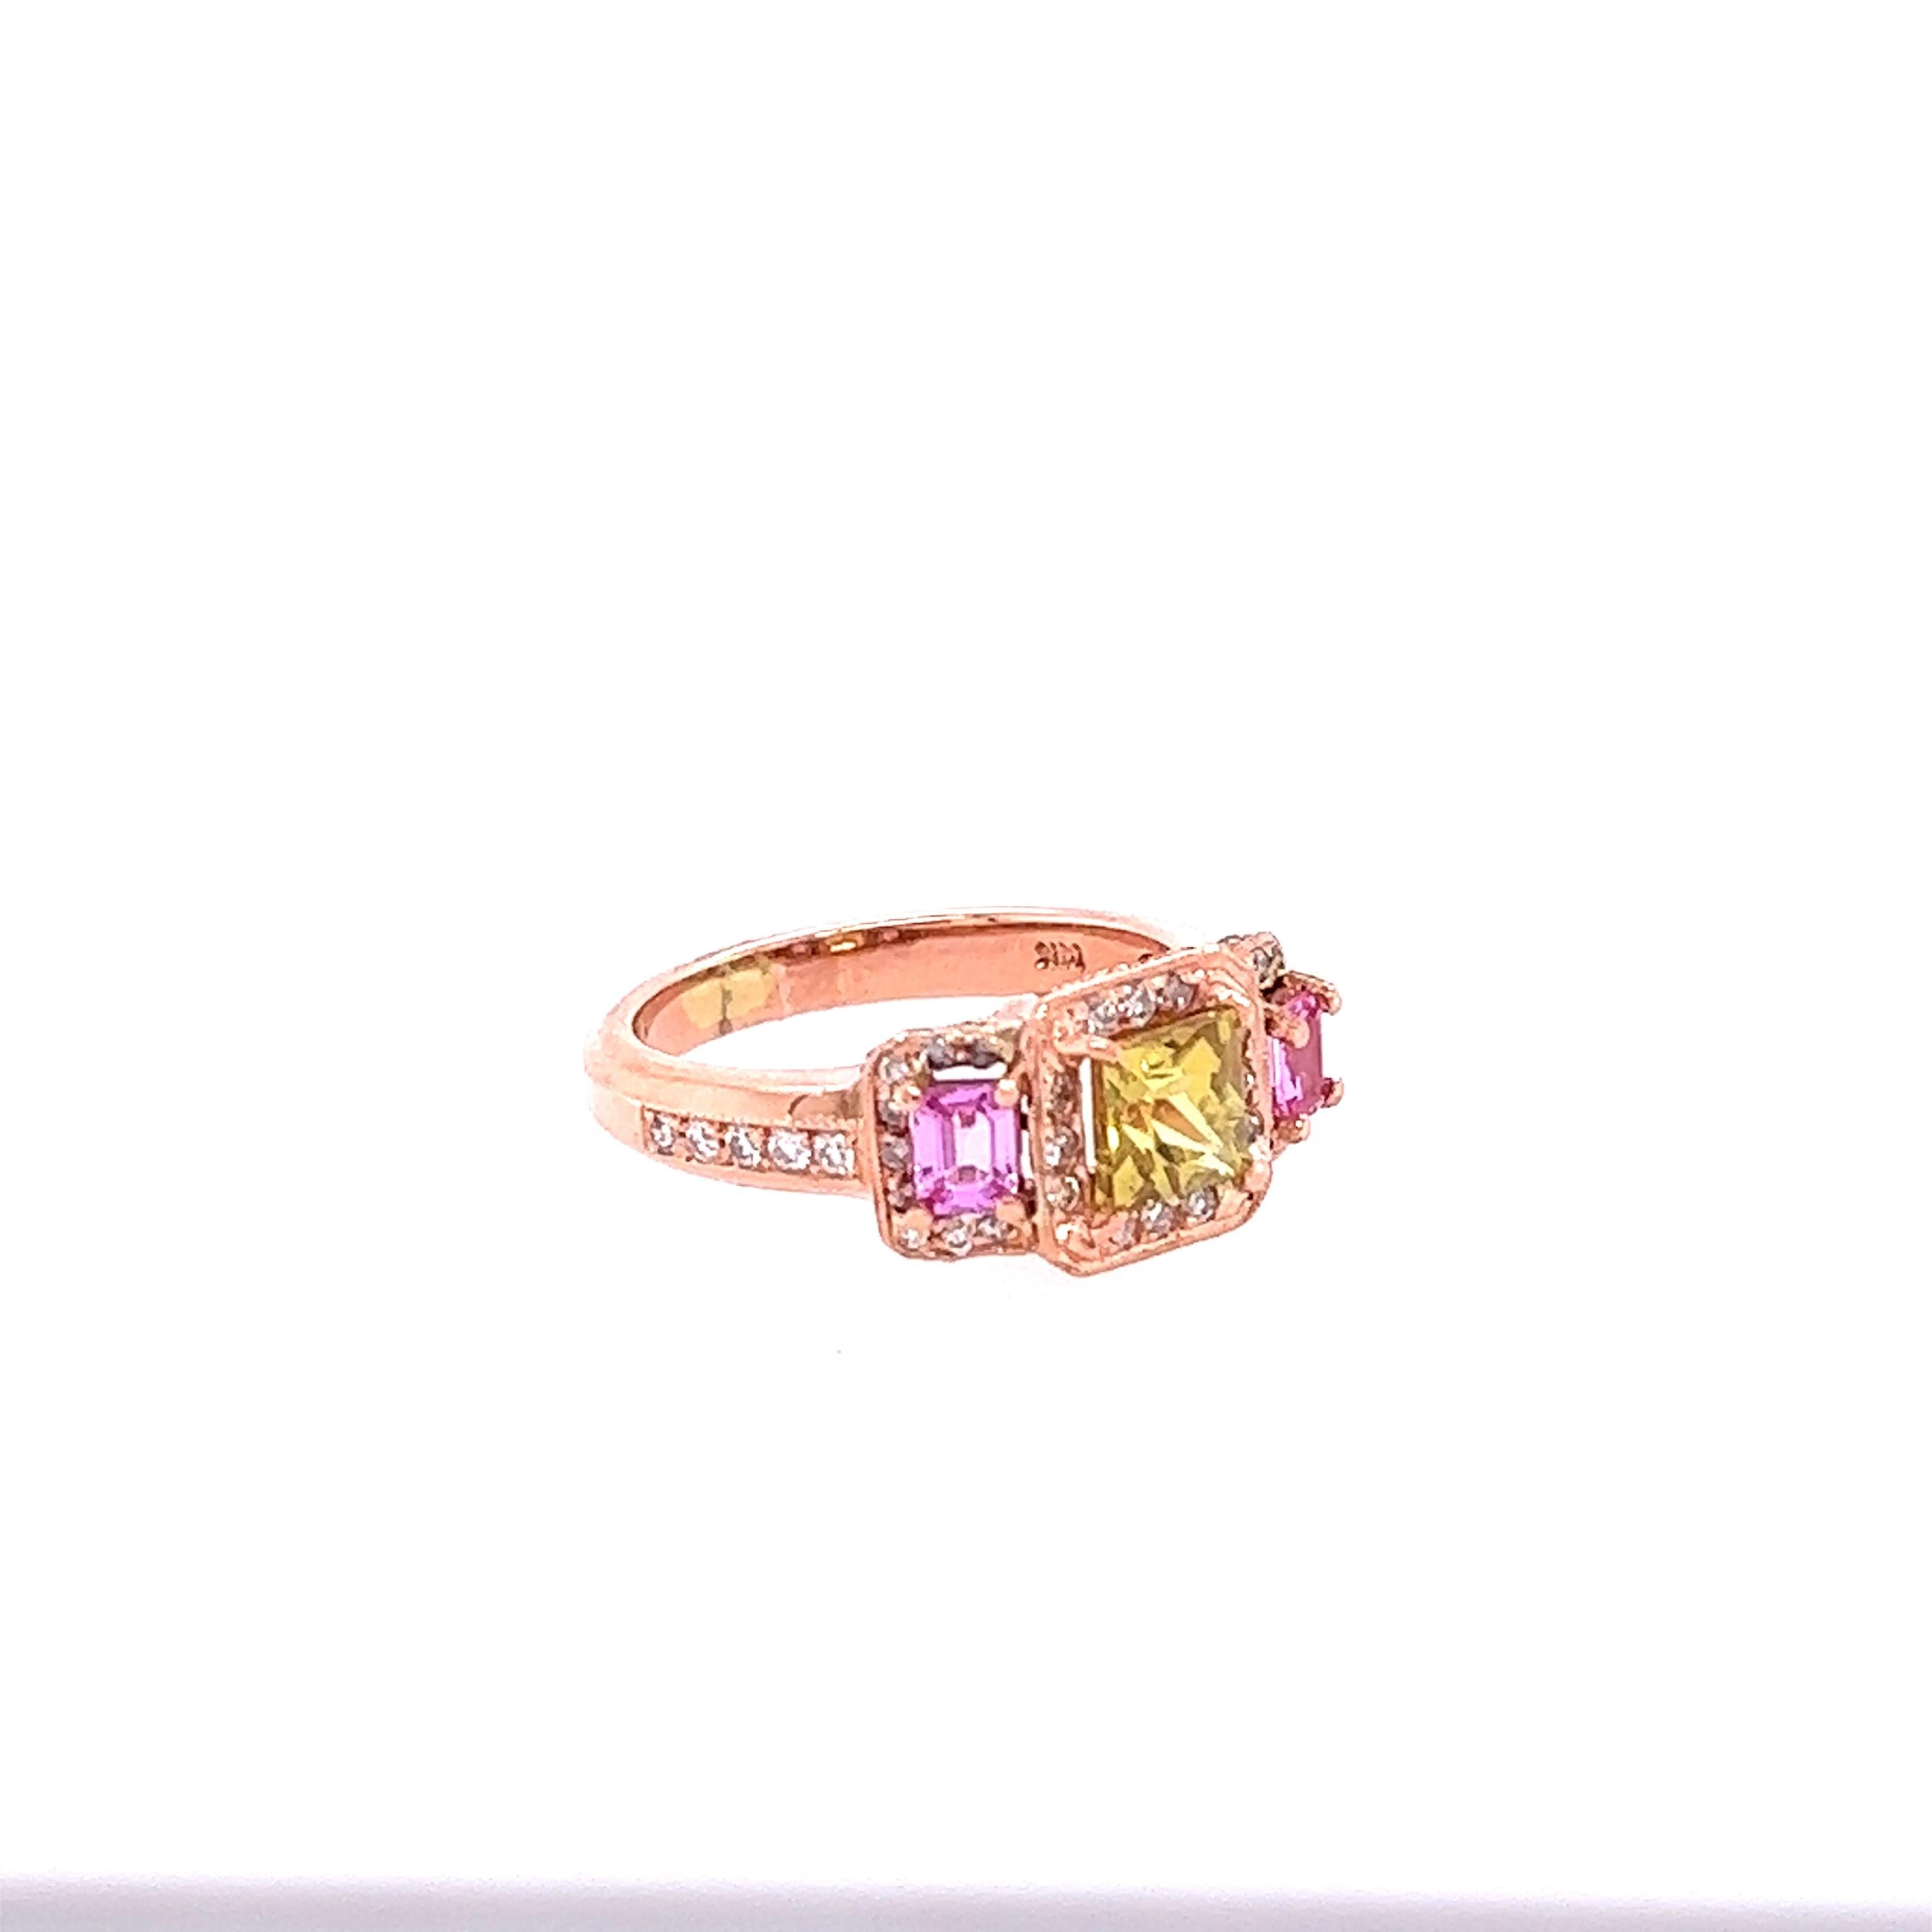 Dieser Ring hat einen Square Cut Natural, No Heat GIA Certified Natural Yellow Sapphire, die 1,23 Karat wiegt. Die GIA-Zertifikatsnummer lautet: 6224314132 und kann auf der GIA-Website eingesehen werden. 
Es hat auch 2 Square Cut Natural Pink